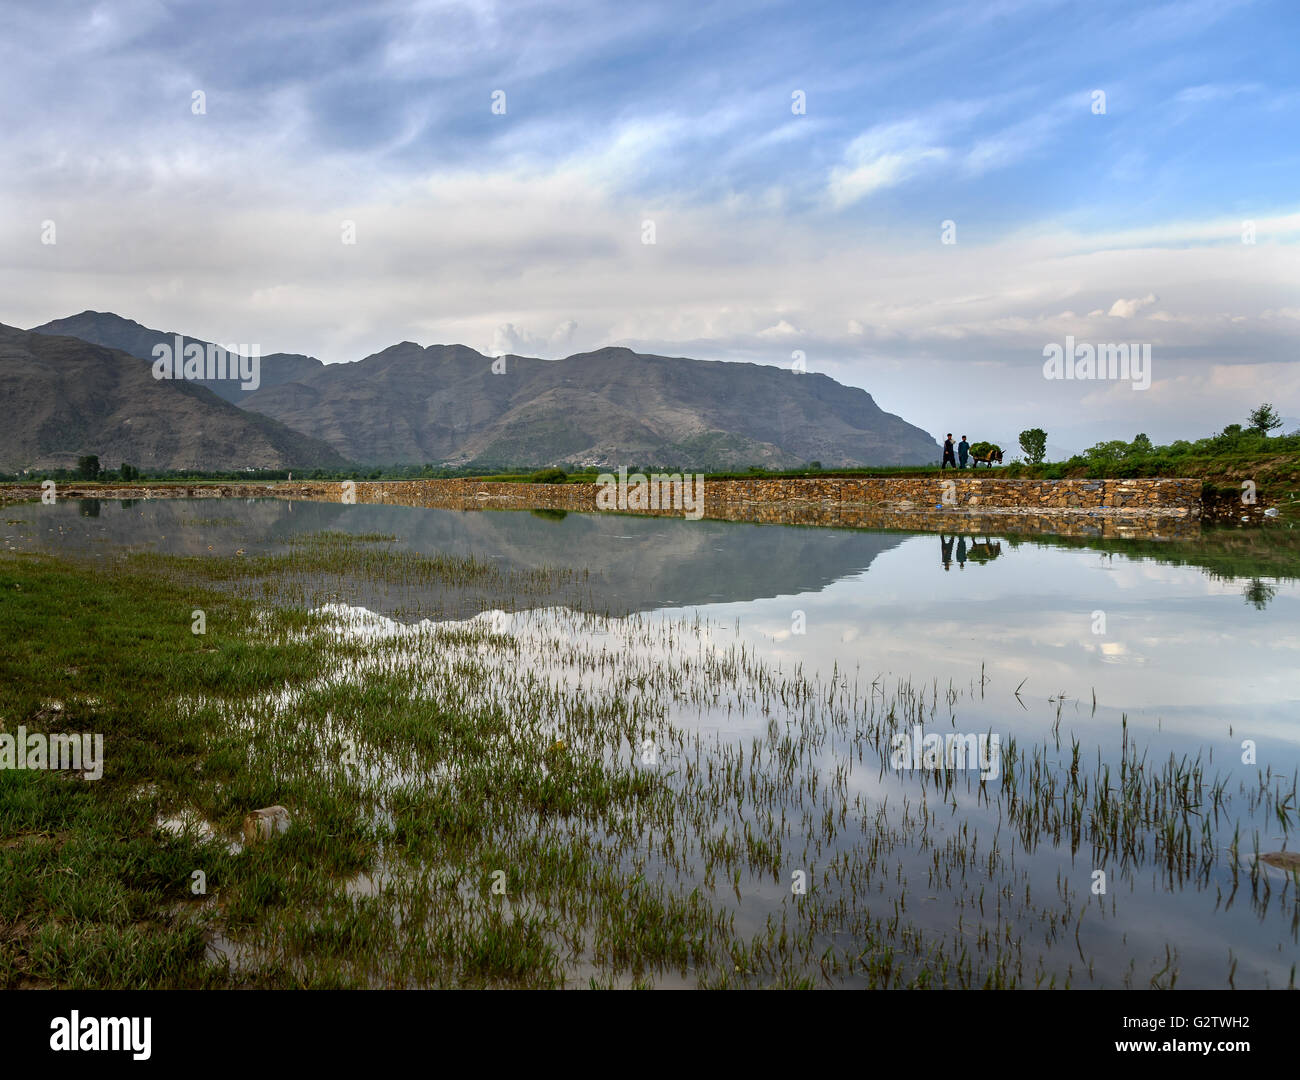 Swat; è una valle fluviale e un distretto amministrativo di Khyber Pakhtunkhwa provincia del Pakistan. Foto Stock